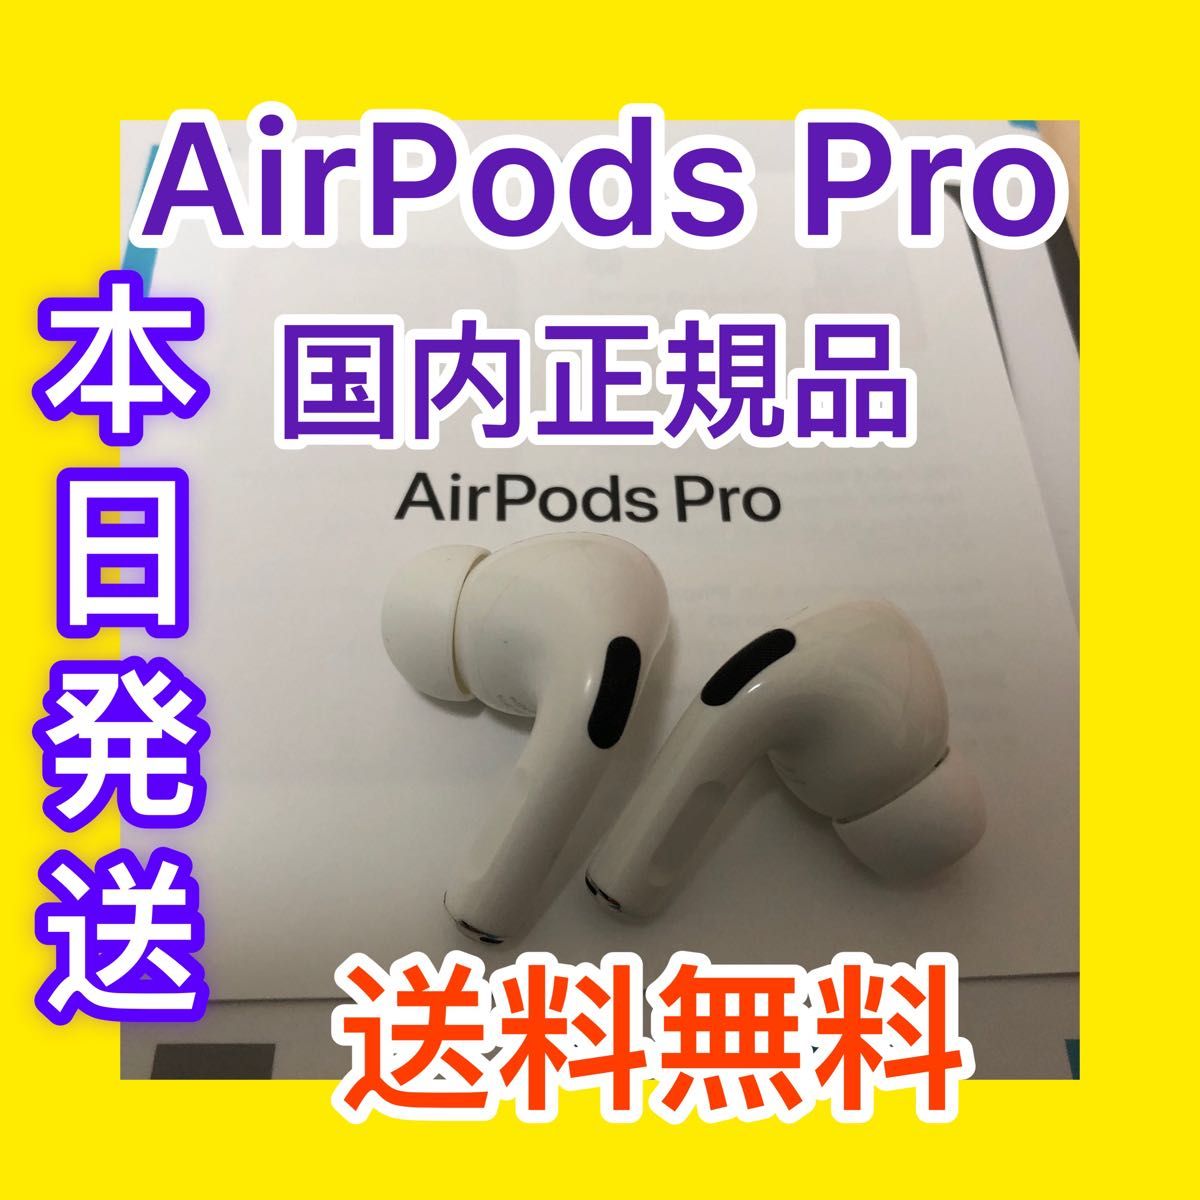 即日発送 エアーポッズプロ左右両耳のみ AirPods Pro 国内正規品 aob